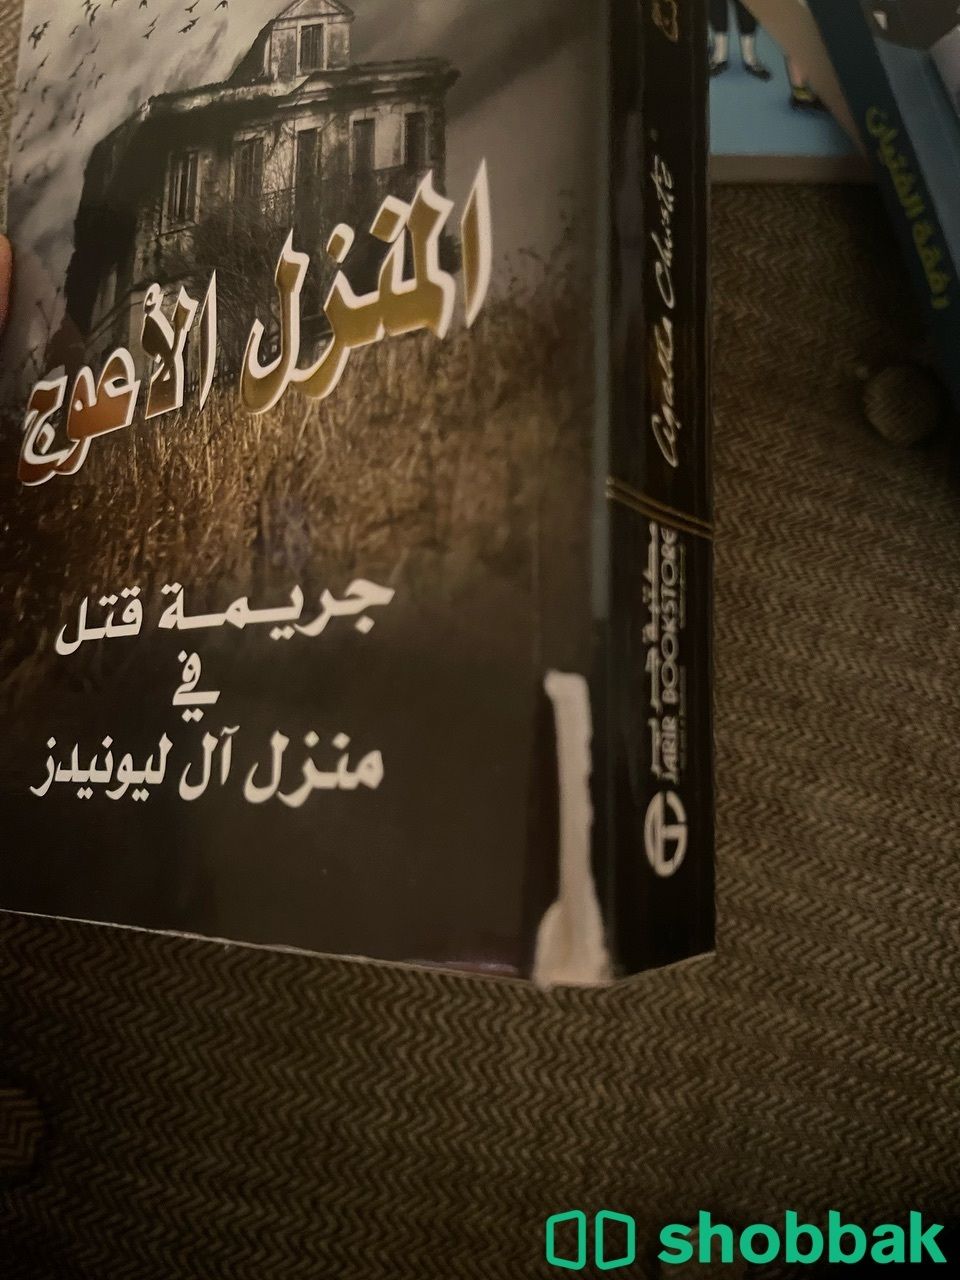 كتاب اجاثا كريستي المنزل الاعوج شباك السعودية